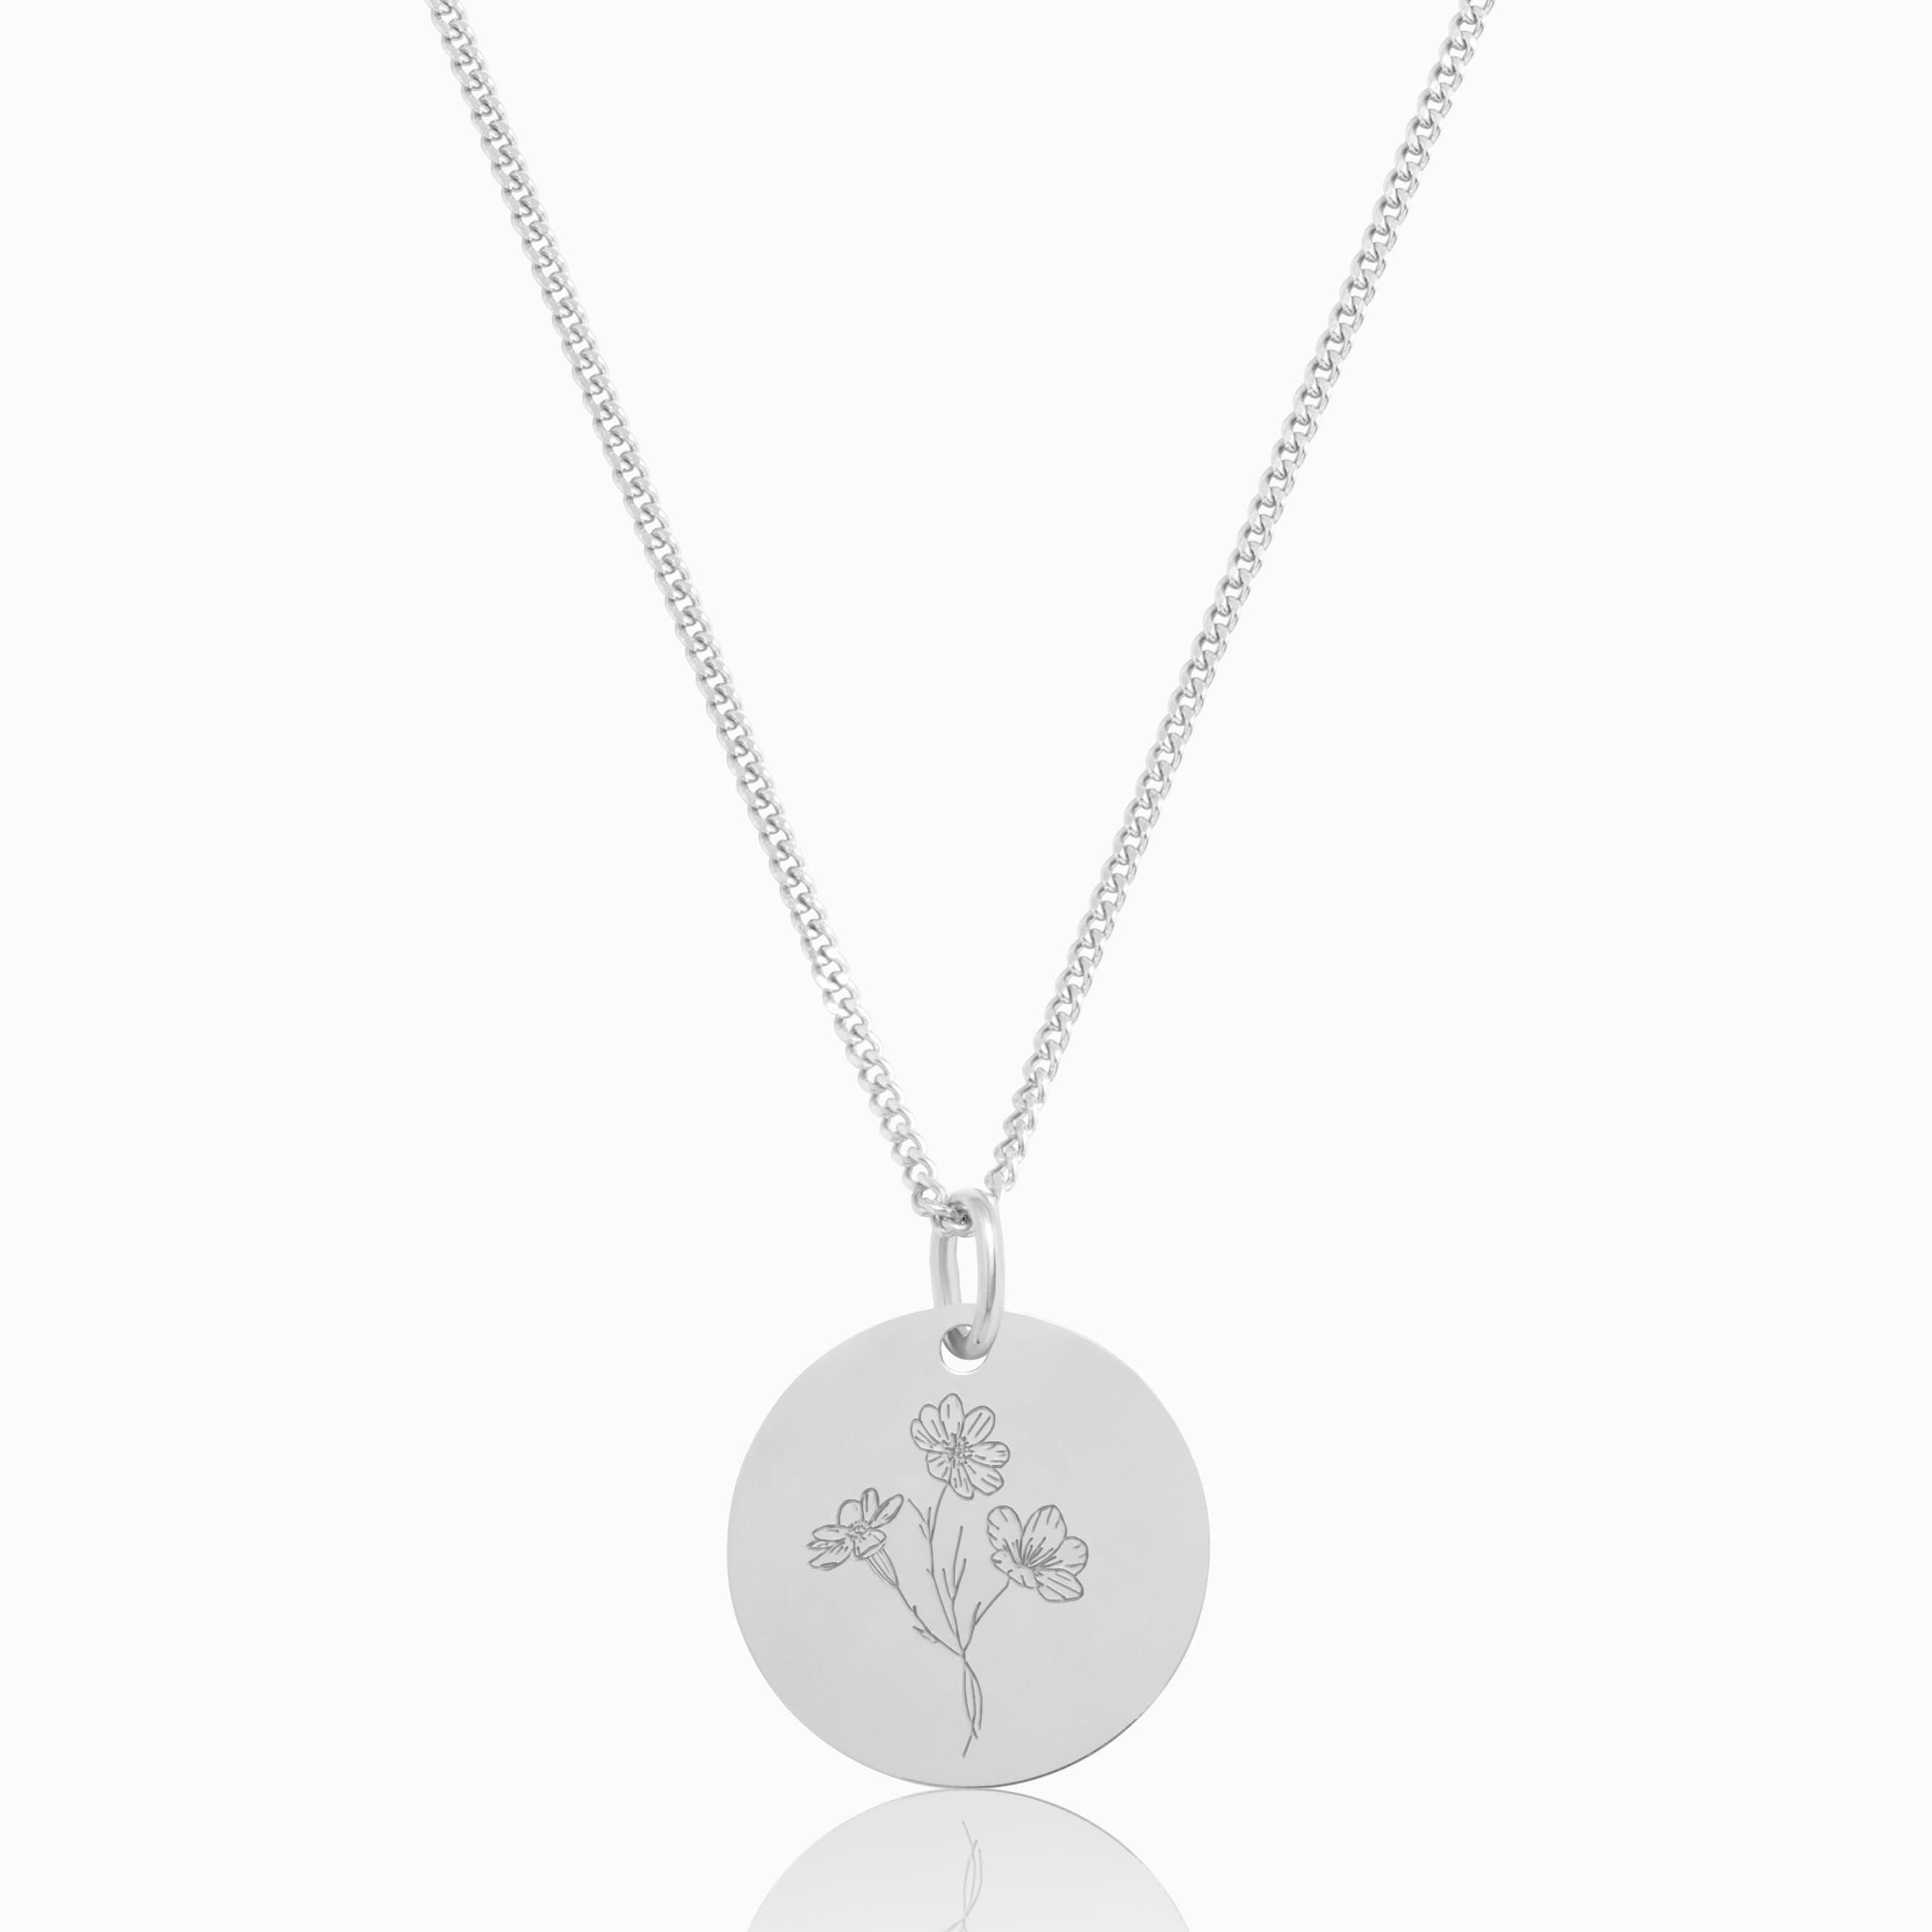 Kette mit Geburtsblumen Gravur aus 925 Silber. Personalisierte Familien Kette | Emma & Marie